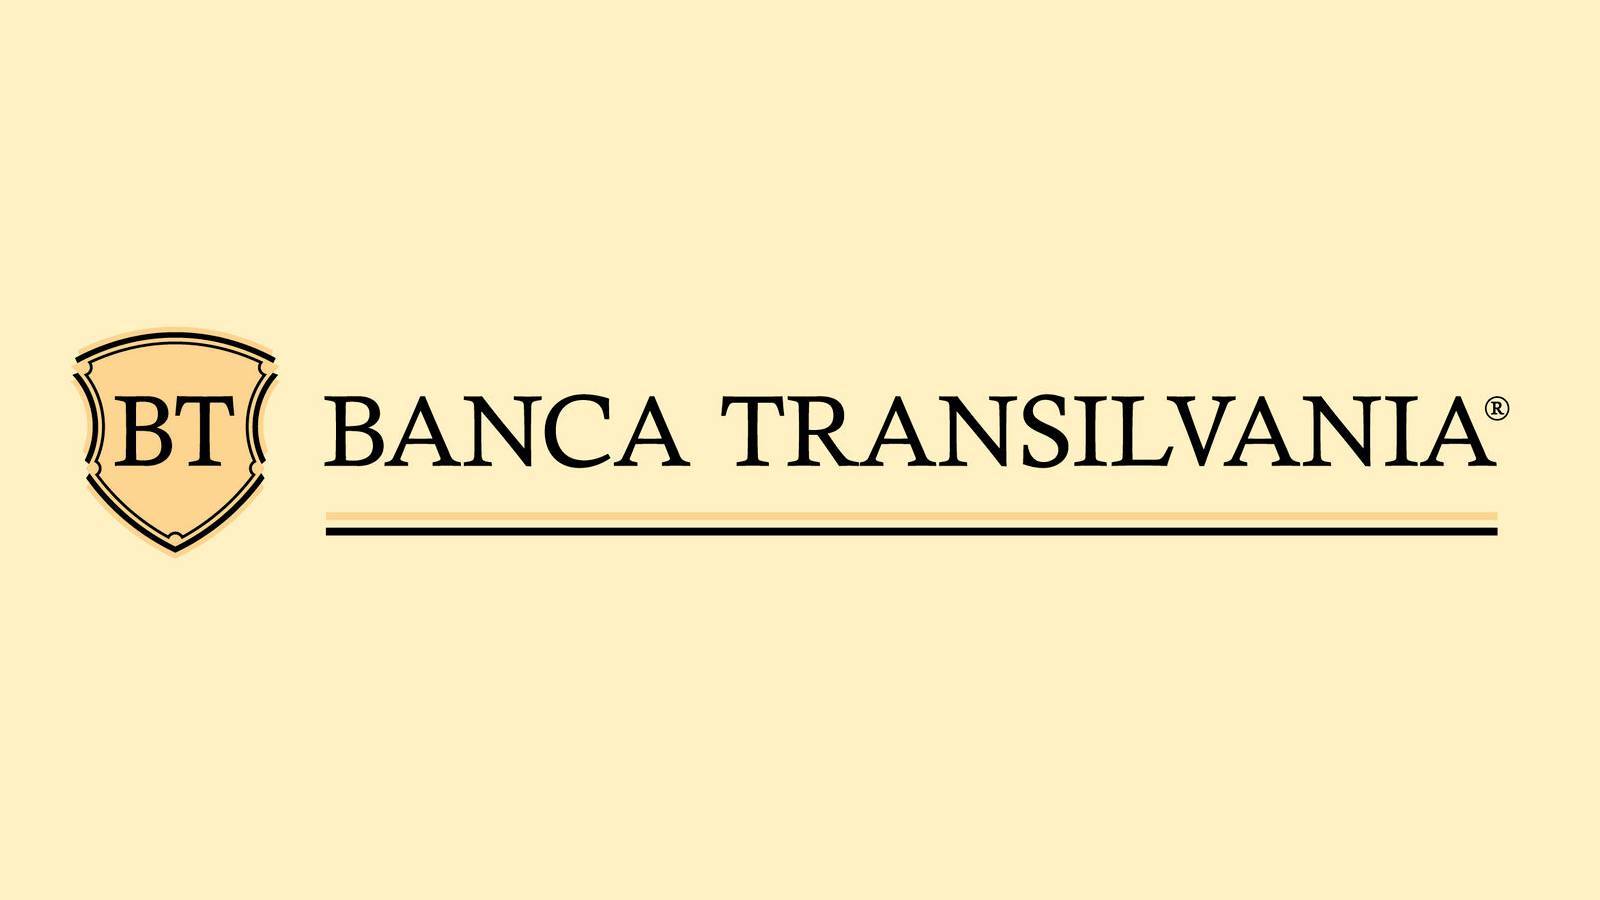 Avis de BANCA Transilvania AVERTISSEMENT envoyé à tous les clients